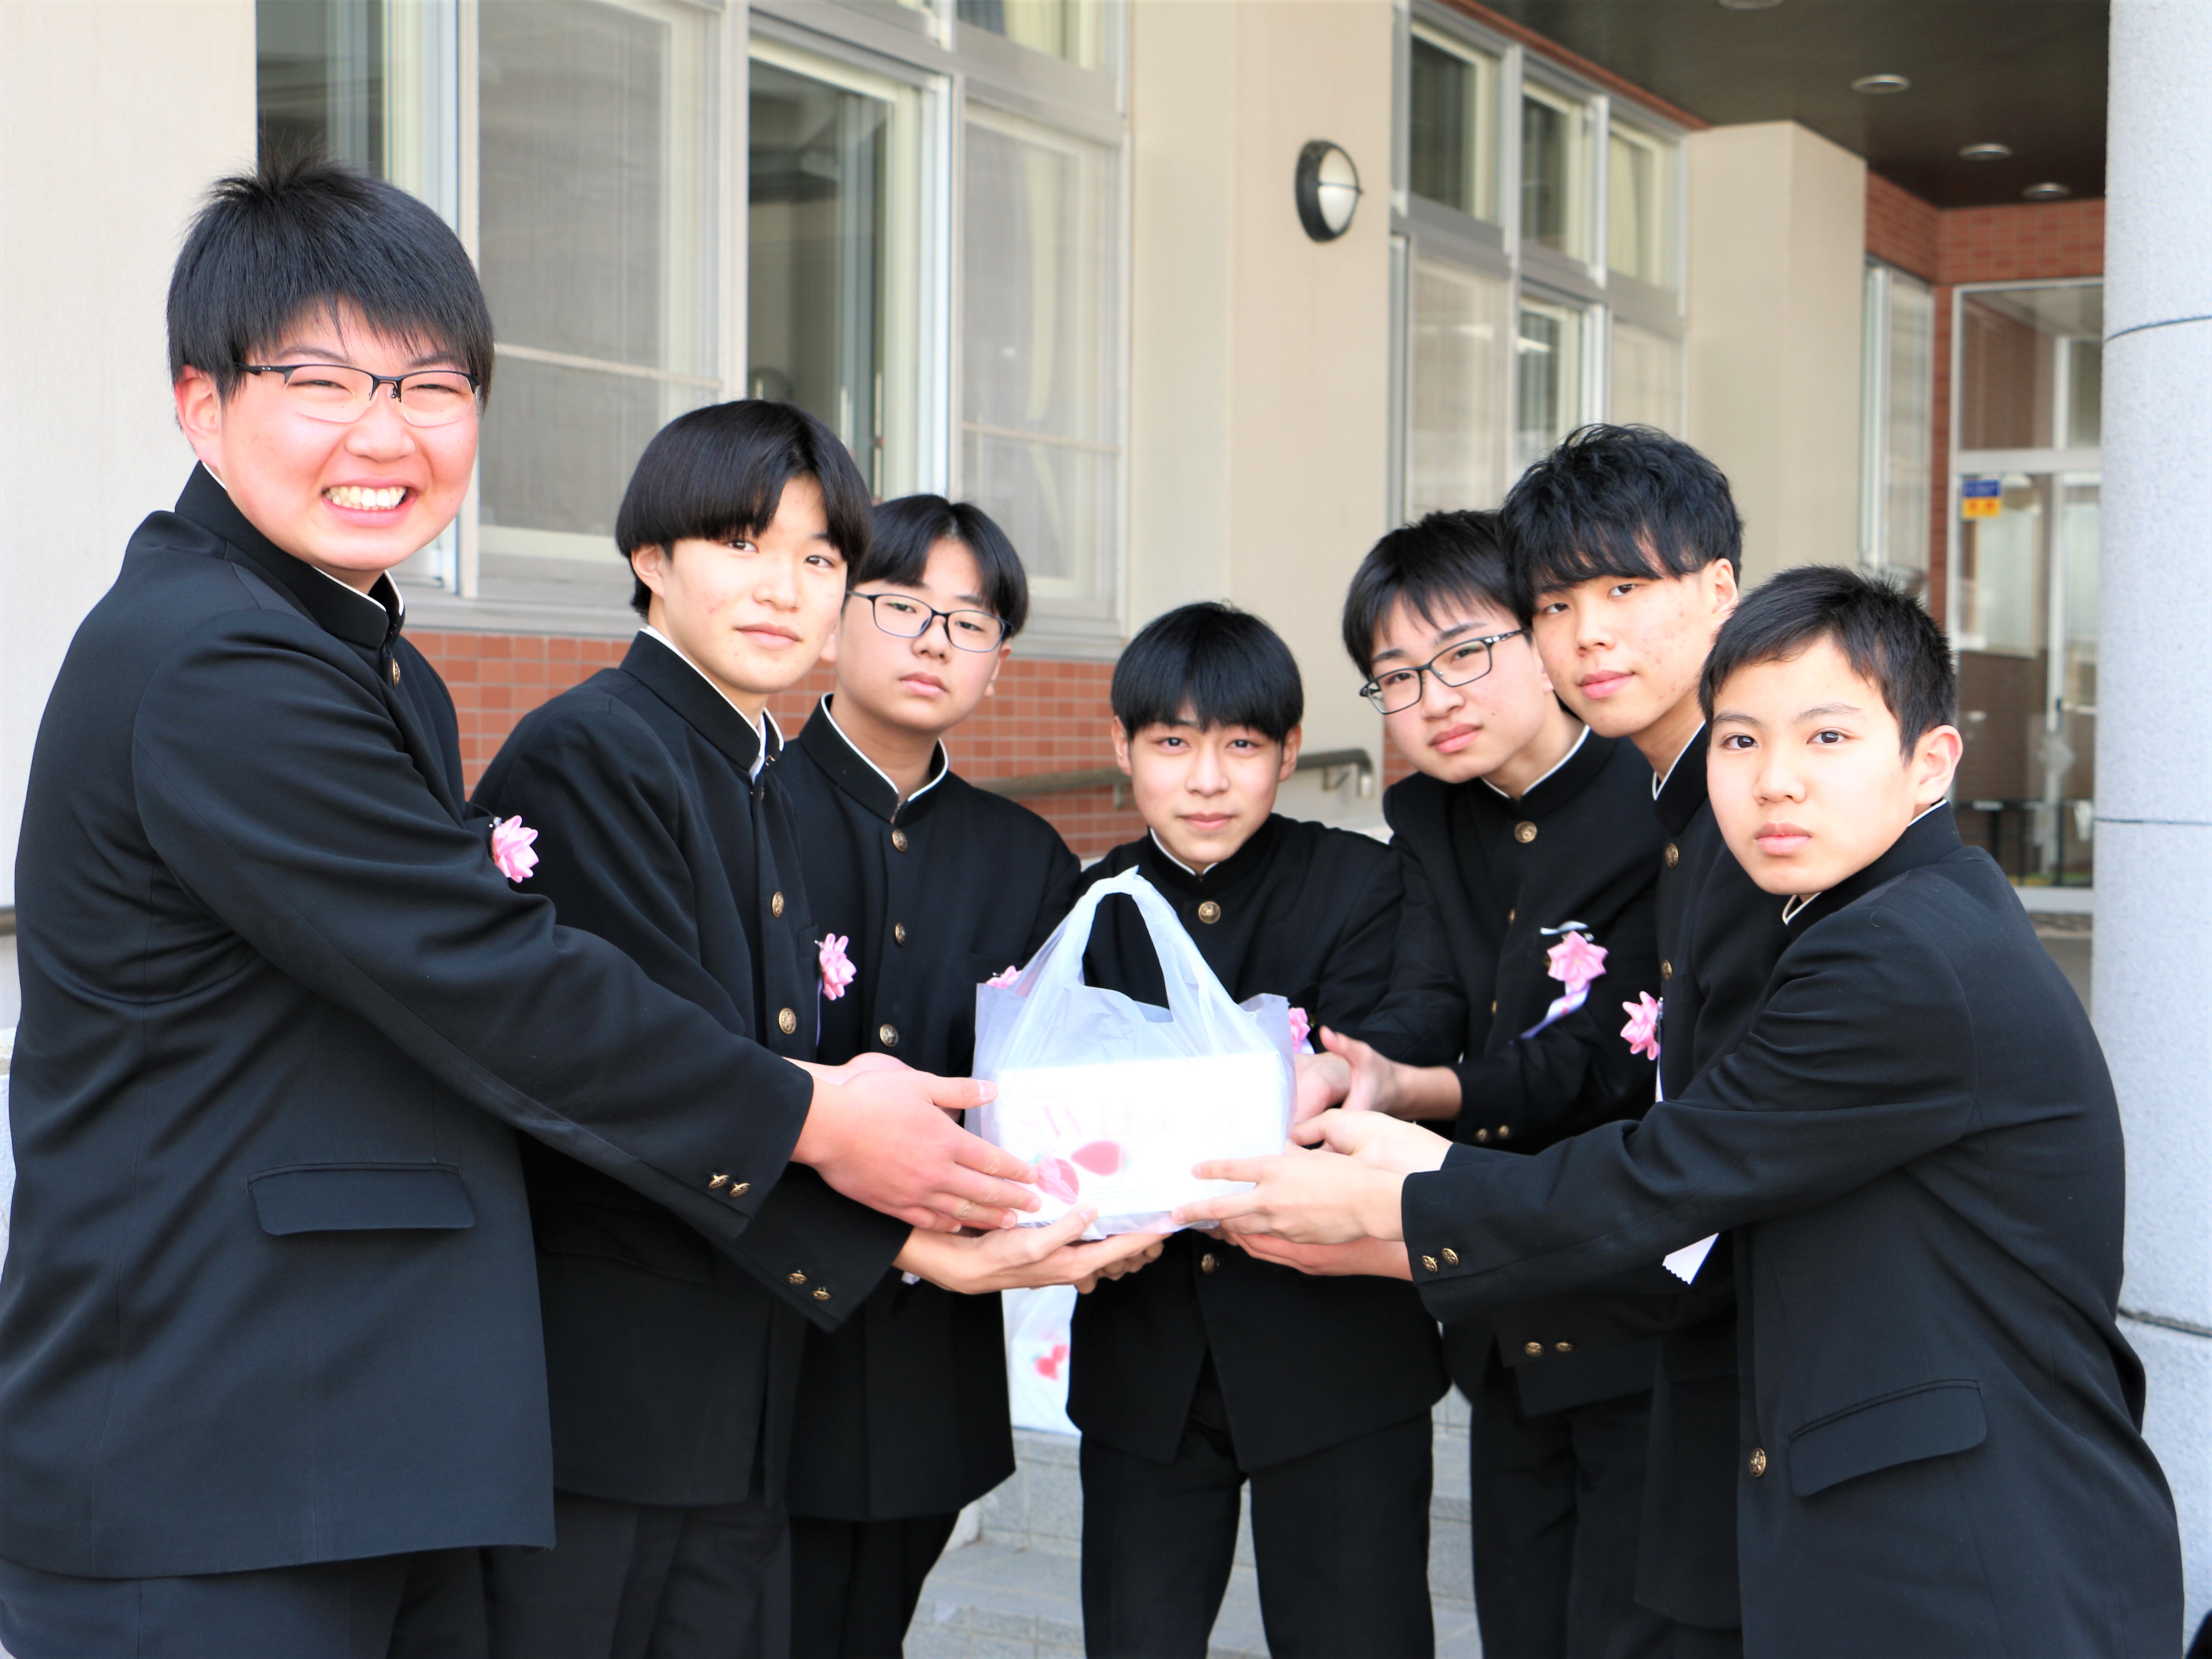 喜茂別中学校卒業生へお祝い贈呈